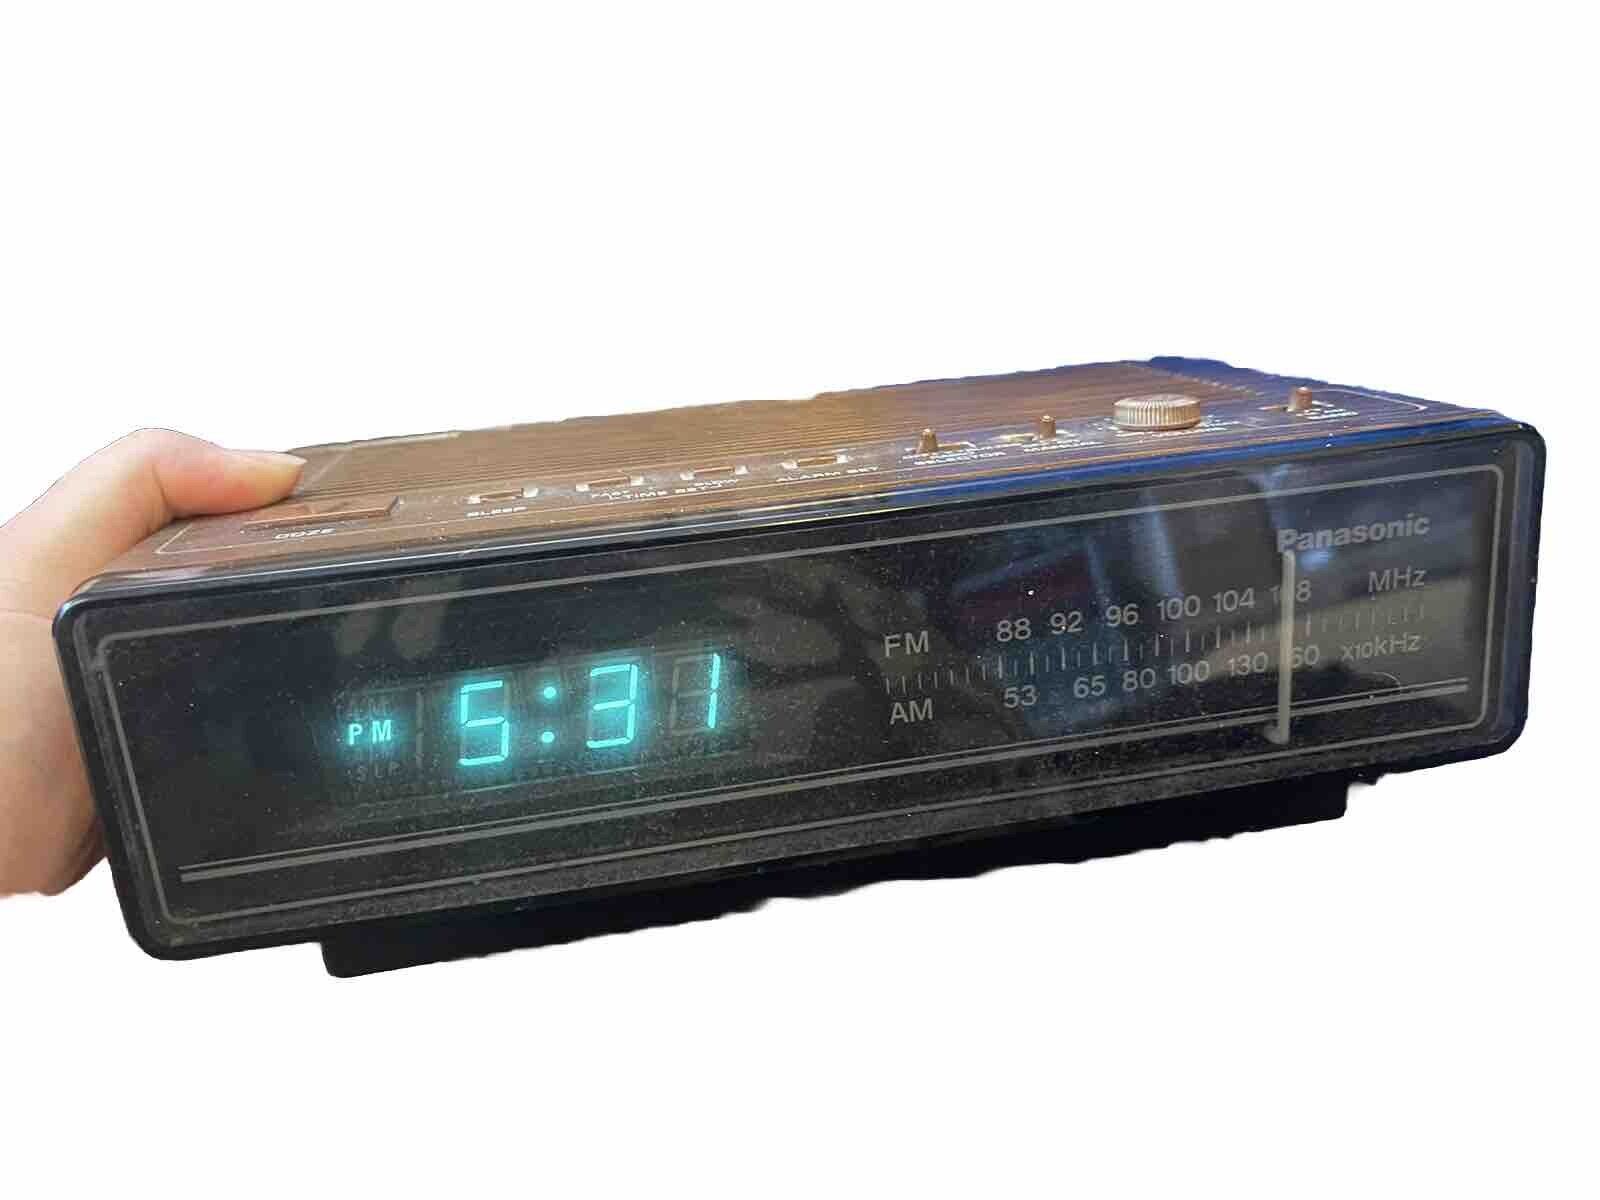 Panasonic RC-65 AM/FM LED Digital Alarm Clock Radio Vintage TESTED Working